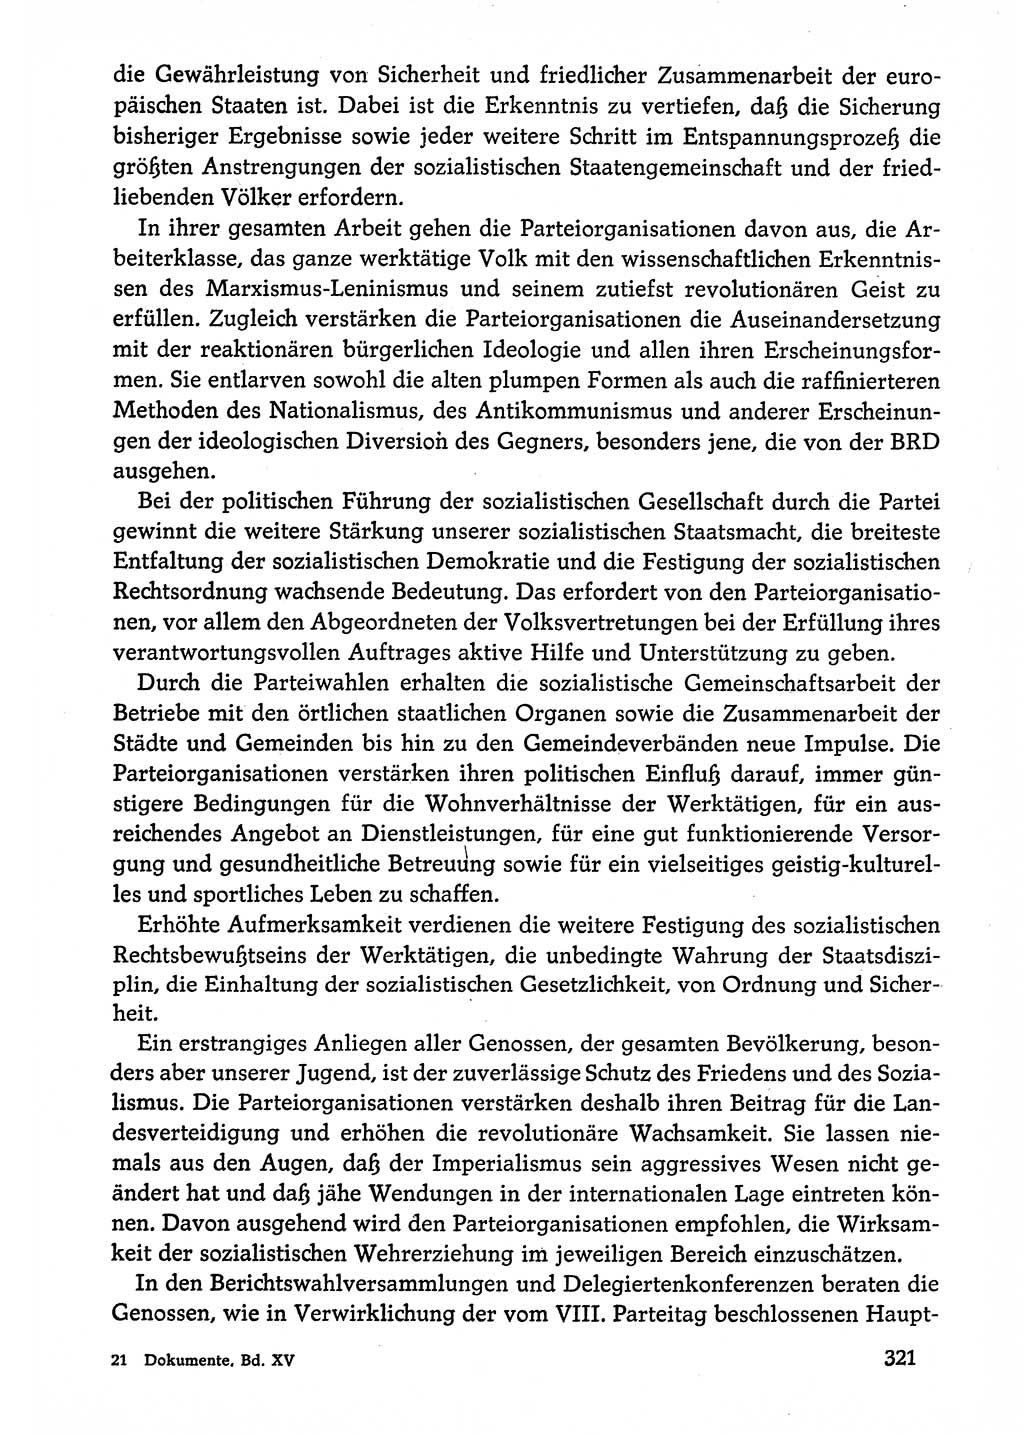 Dokumente der Sozialistischen Einheitspartei Deutschlands (SED) [Deutsche Demokratische Republik (DDR)] 1974-1975, Seite 321 (Dok. SED DDR 1978, Bd. ⅩⅤ, S. 321)